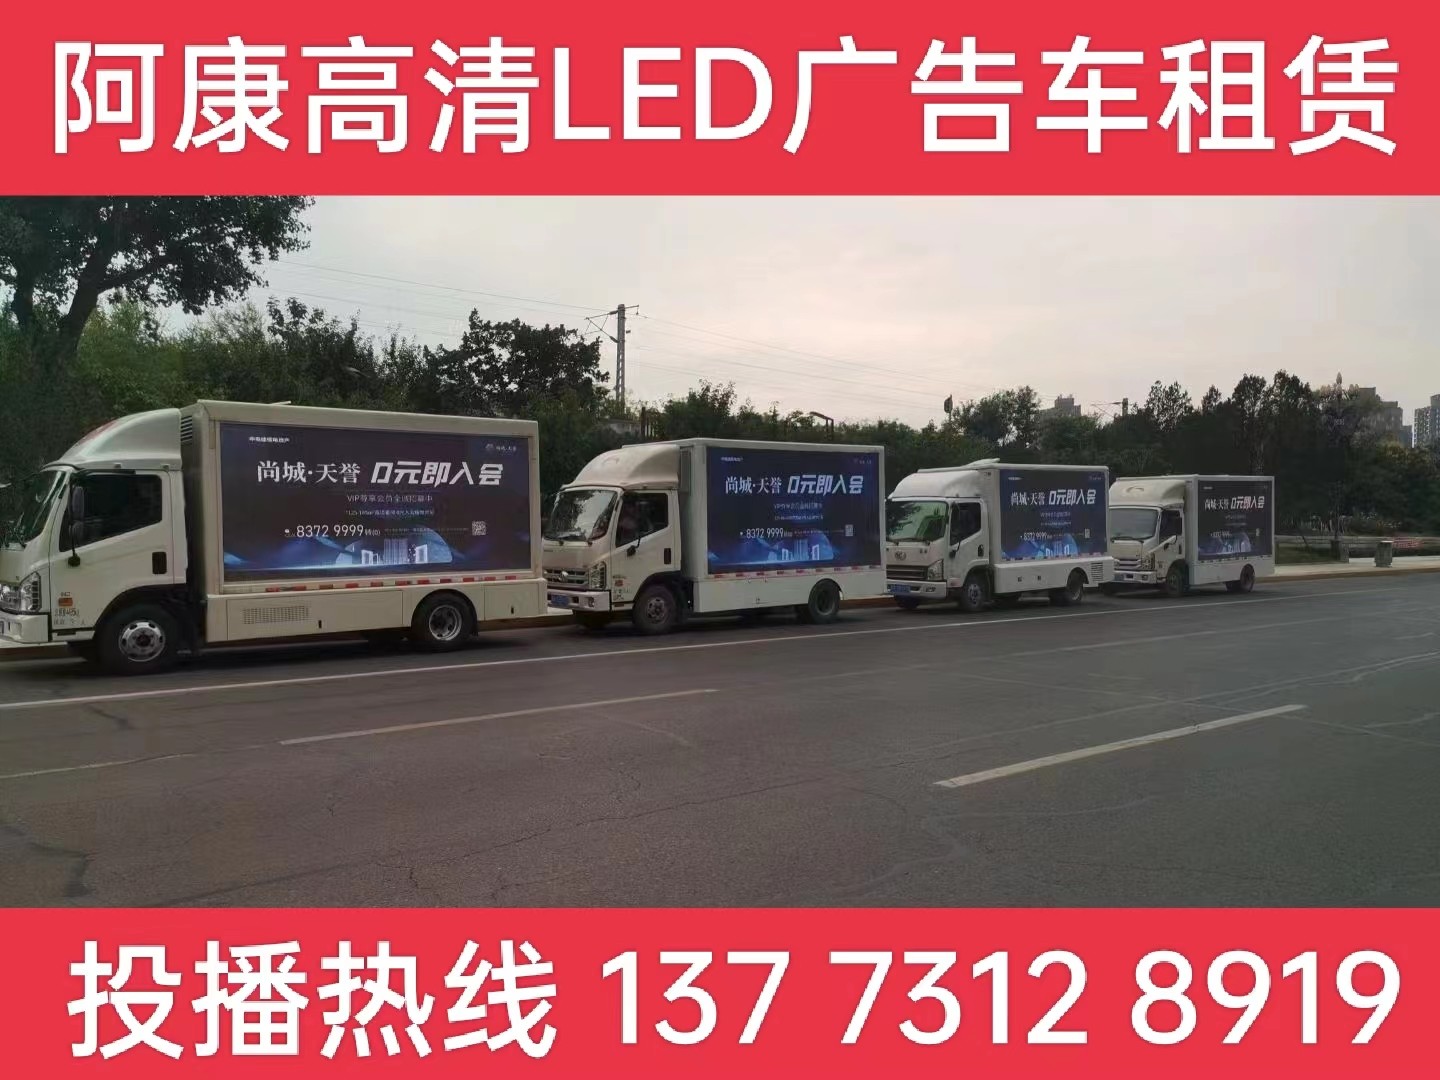 秦淮区LED广告车出租公司